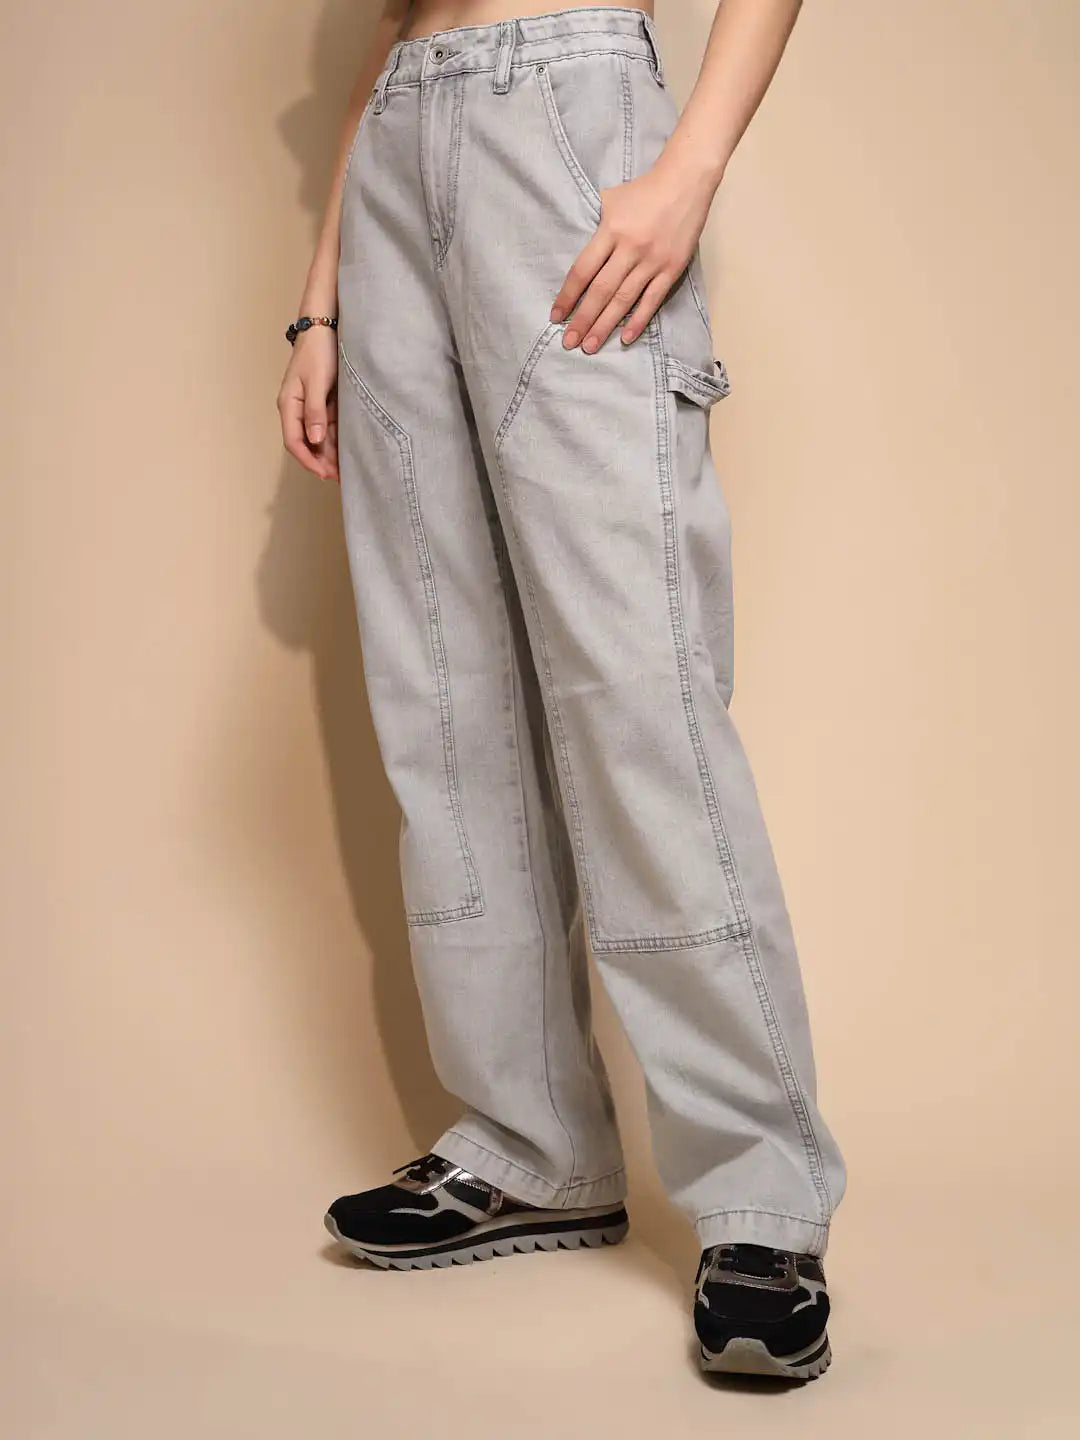 Slate Grey Jeans for Women